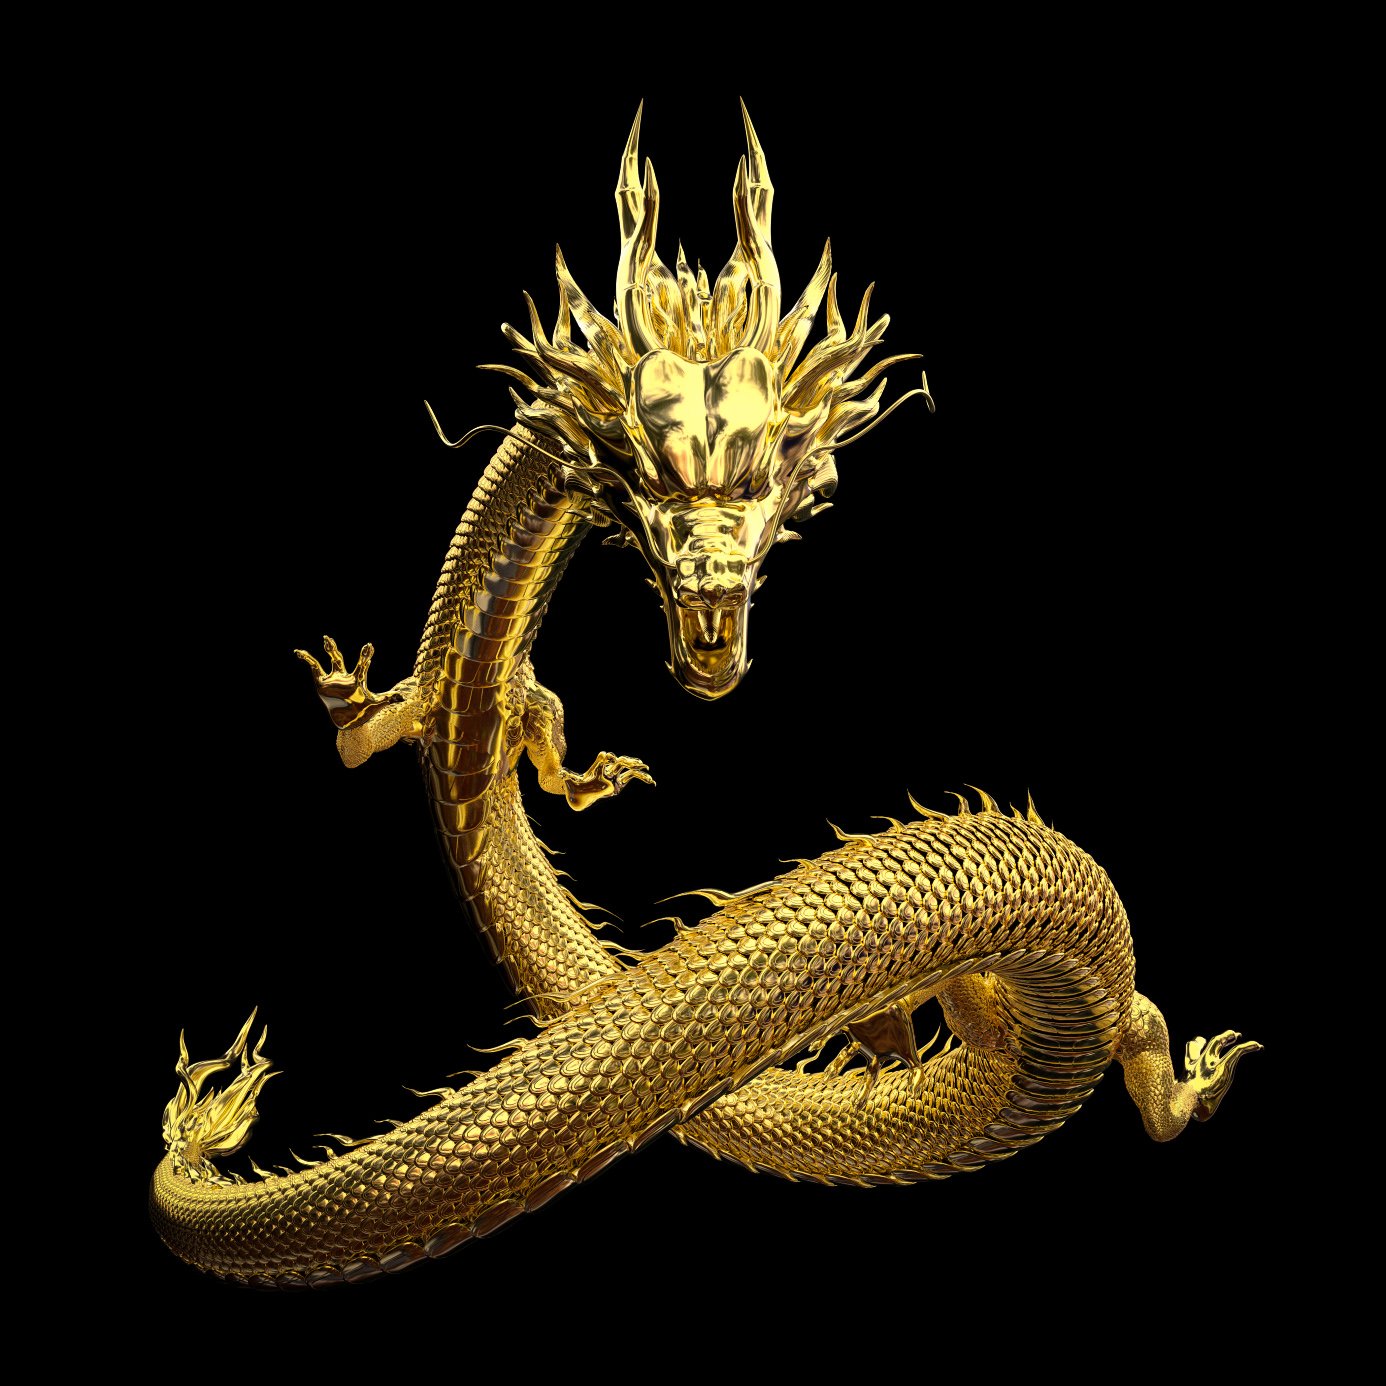 Čínský drak, také známý jako plíce, je legendární stvoření v čínské mytologii.